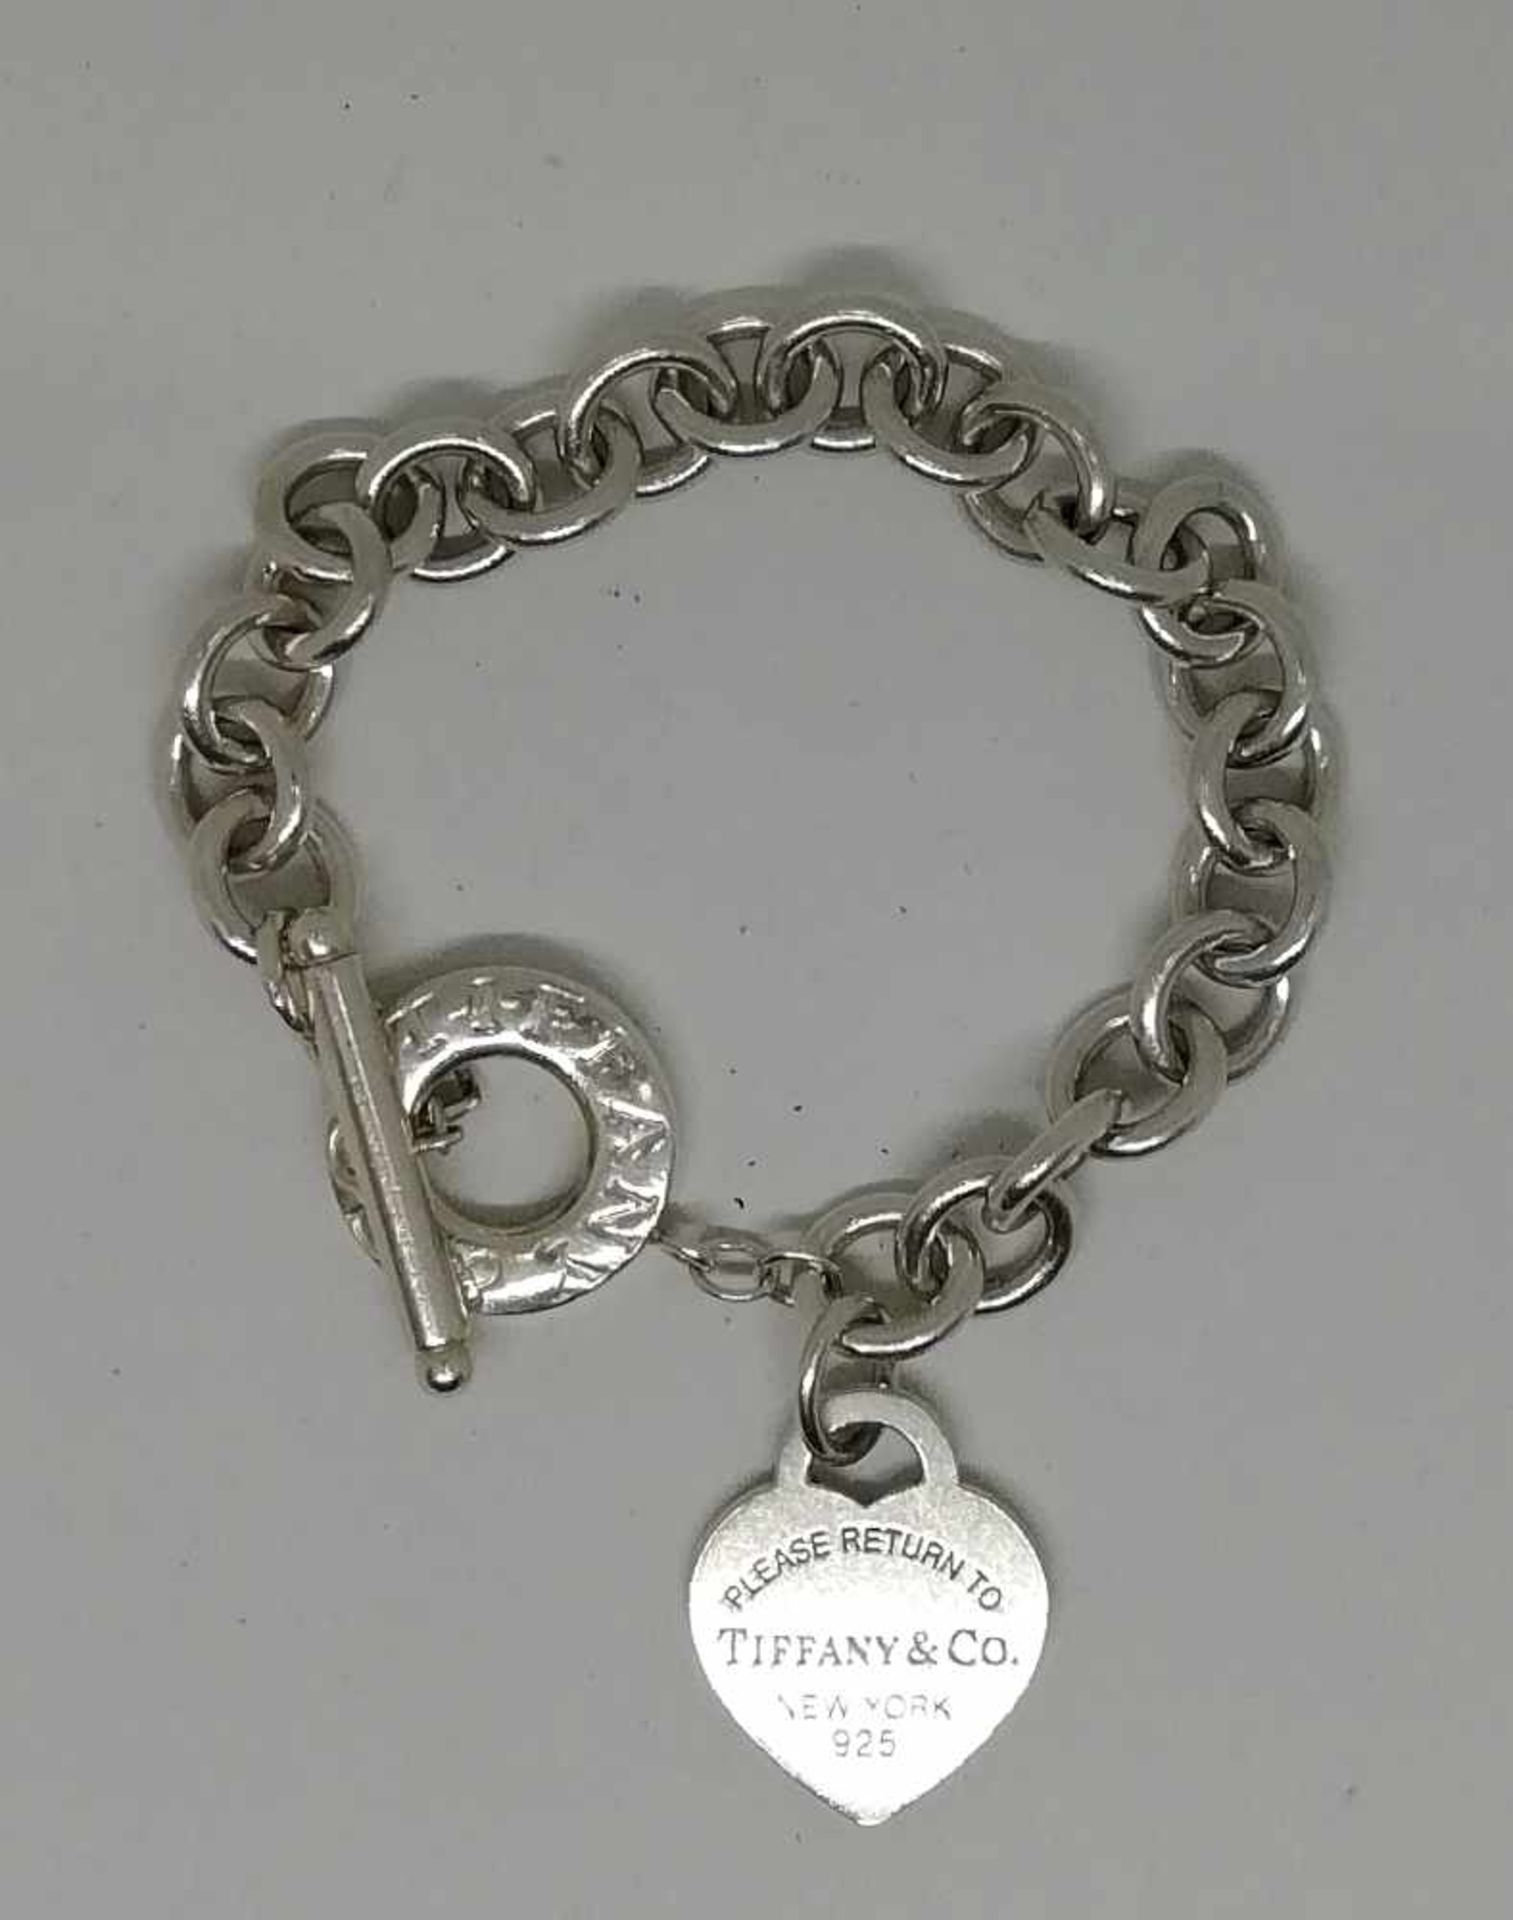 Silberne Armkette mit 2 AnhängernTIFFANY & Co., Silber 925, "Please return to" Länge ca. 17,5cm,